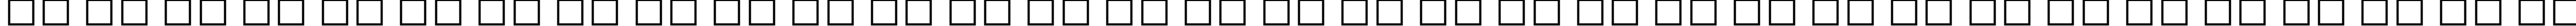 Пример написания русского алфавита шрифтом Eras Bold ITC